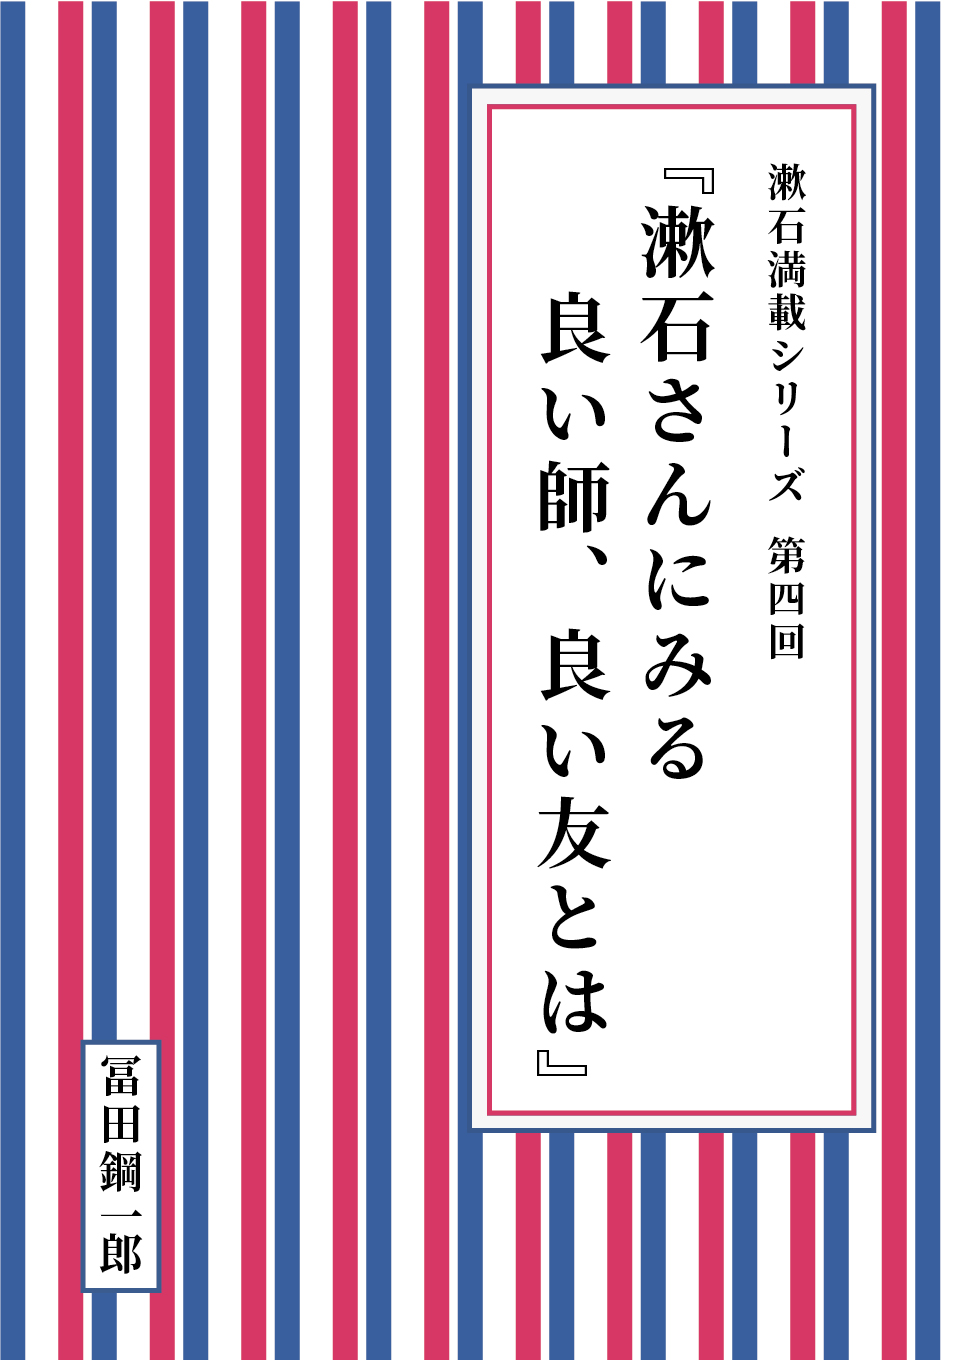 漱石満載シリーズ 第四回『漱石さんにみる良い師、良い友とは』